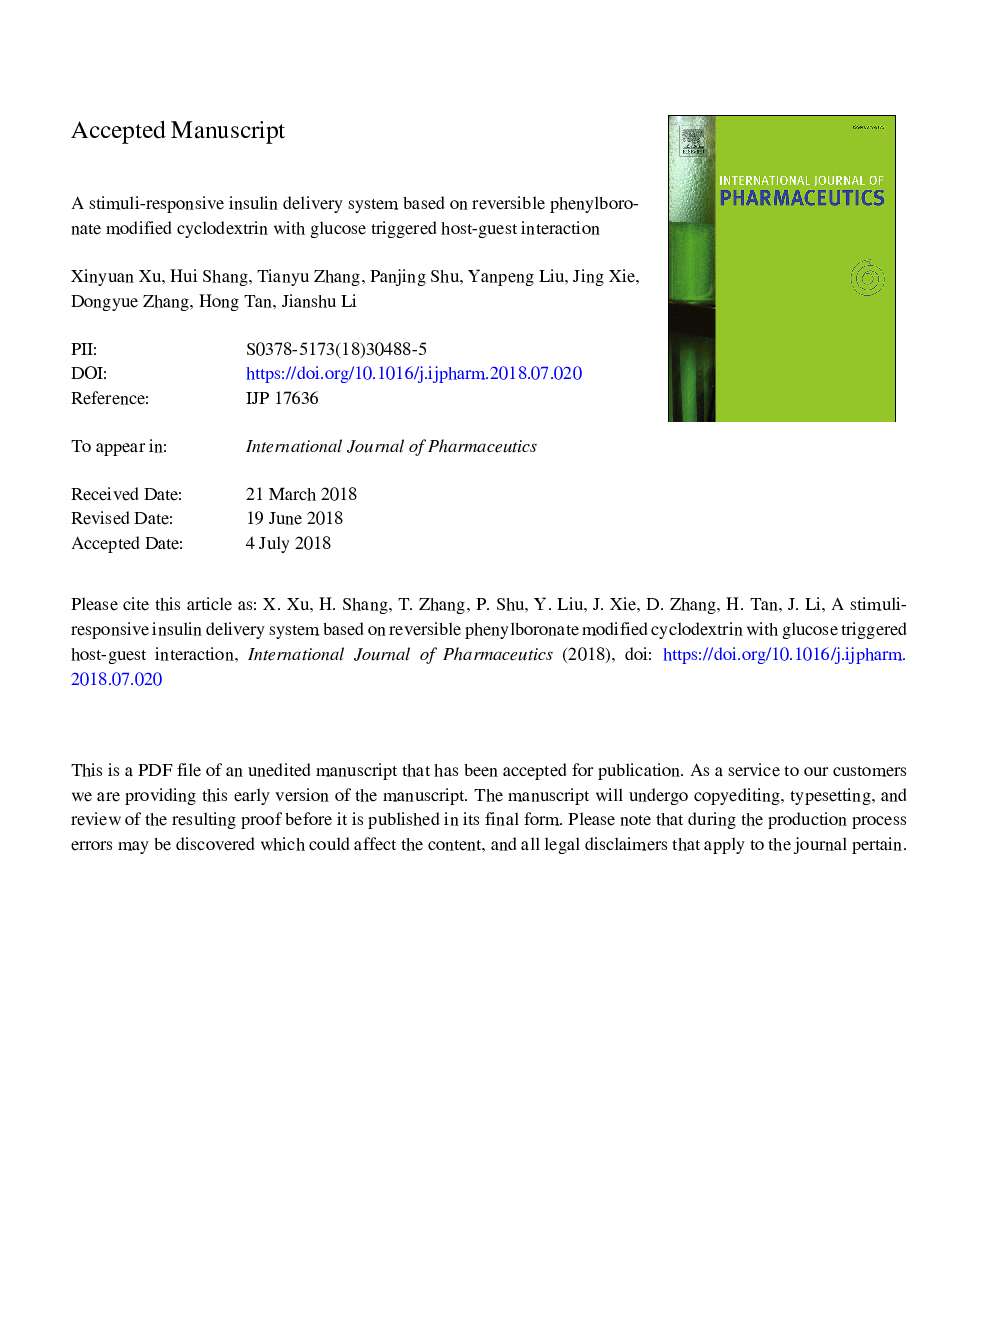 یک سیستم تحویل انسولین واکنش محرک مبتنی بر سیکلوکودکسترون اصلاح شده فنیل بورونات با اثر متقابل میزبان و مهمان گلوکز 